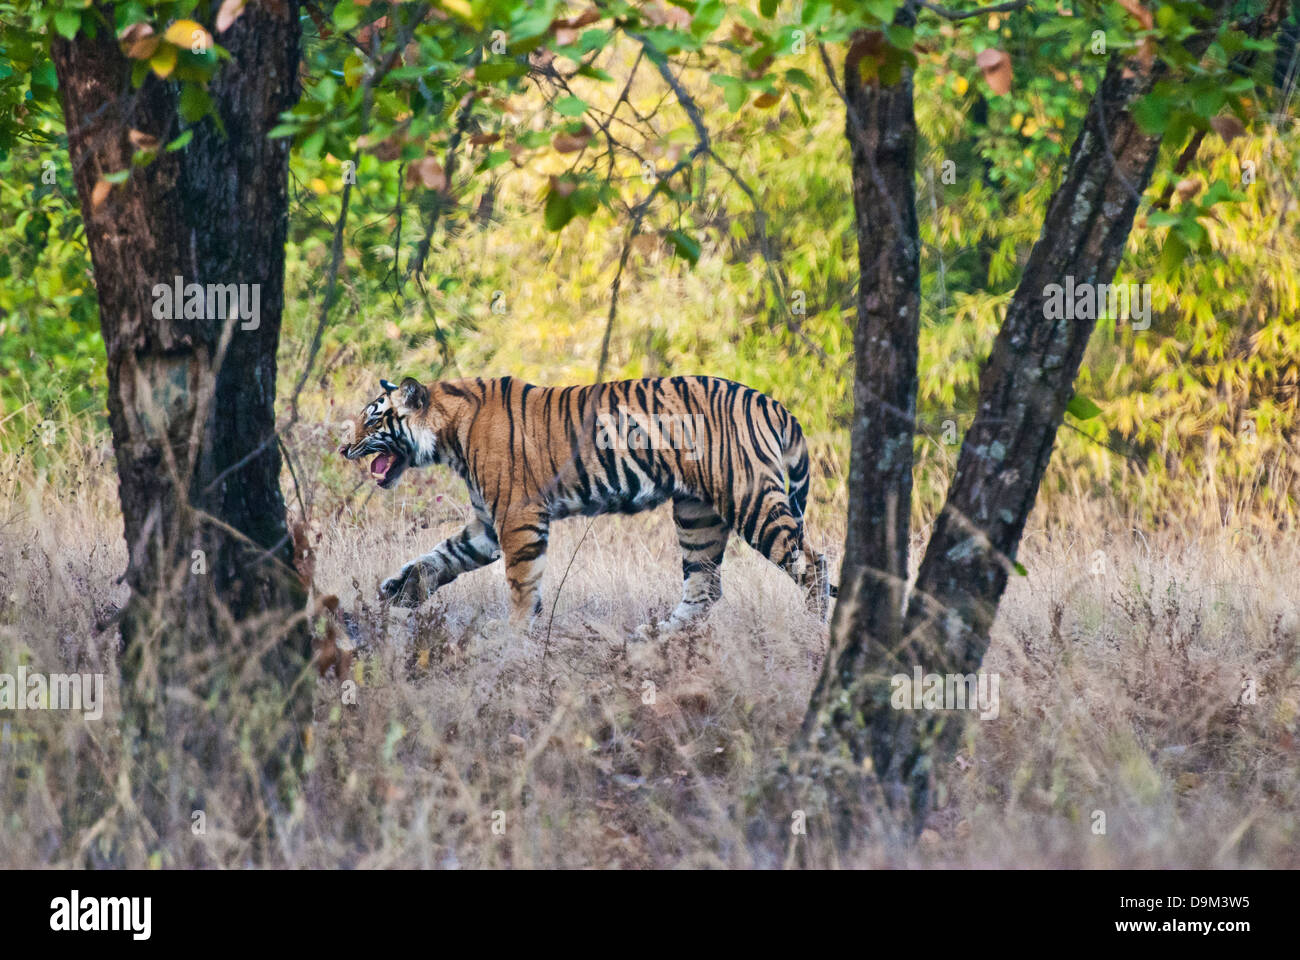 Bengal tiger walking in Bandhavgarh National Park, India Stock Photo